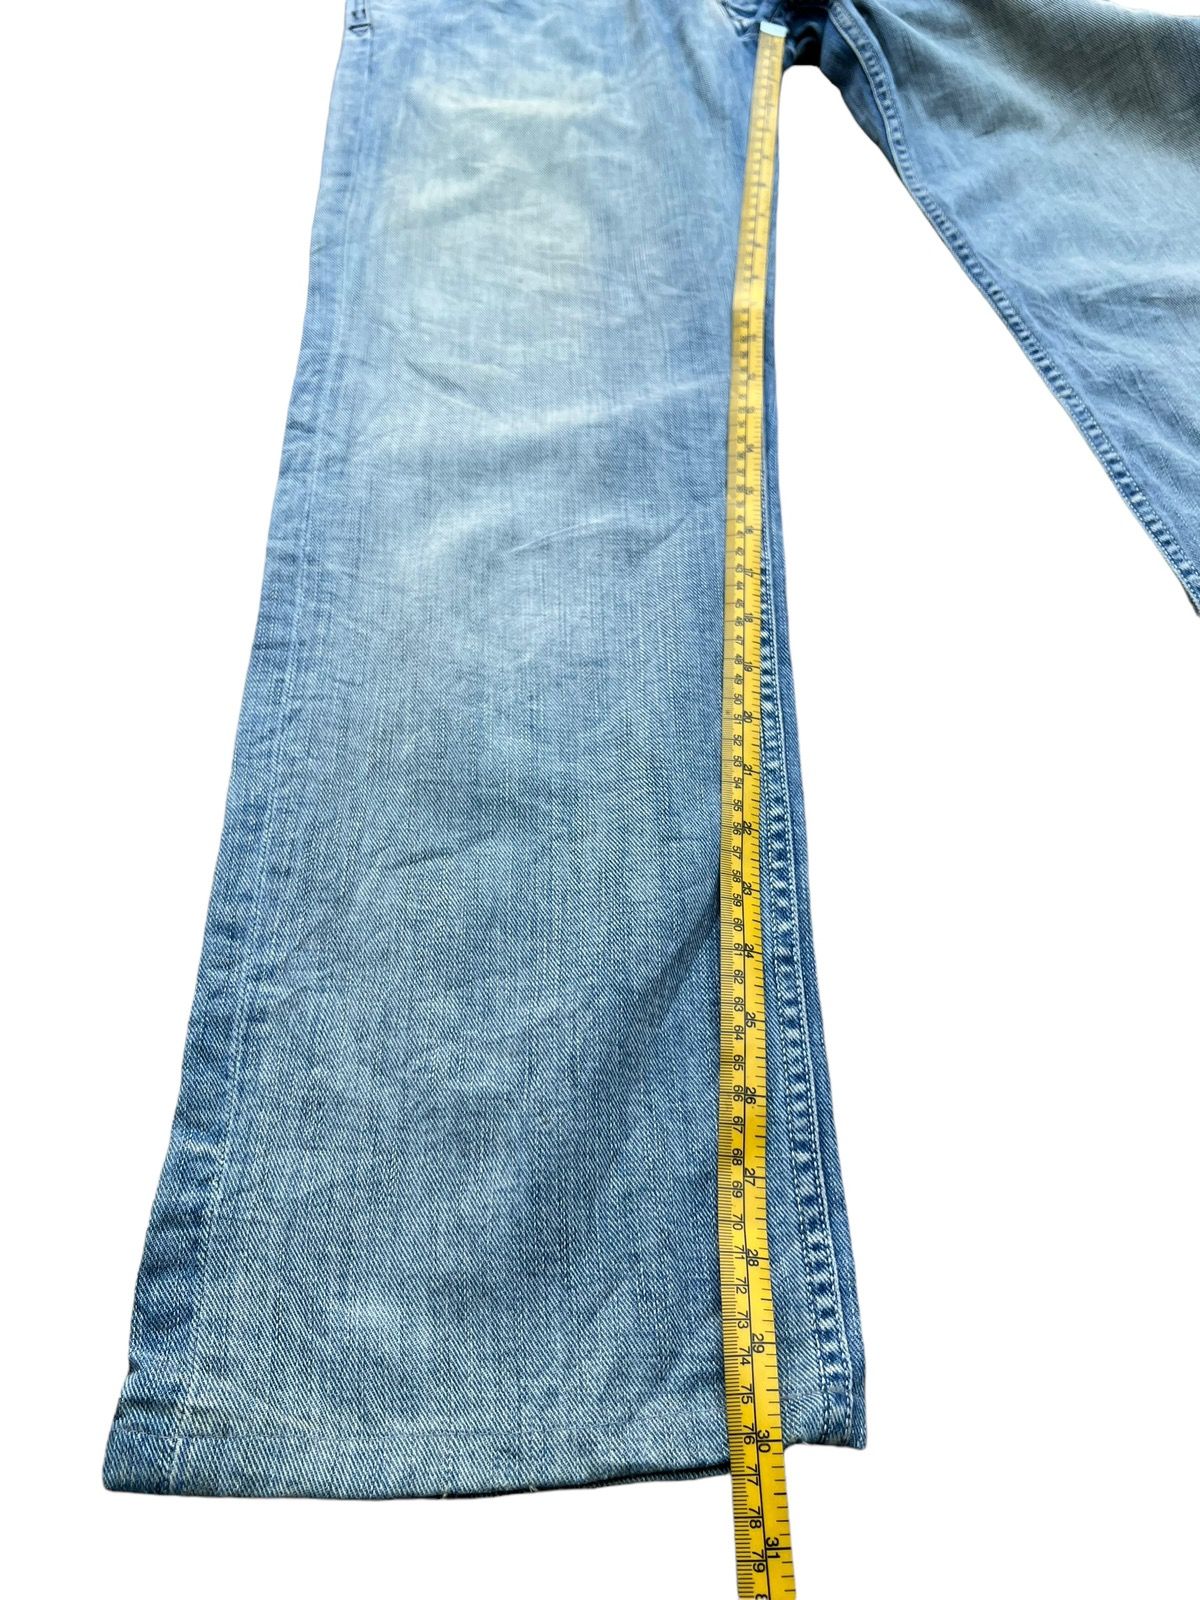 Vintage Distressed Diesel Industry Wide Jeans 32x30 - 13